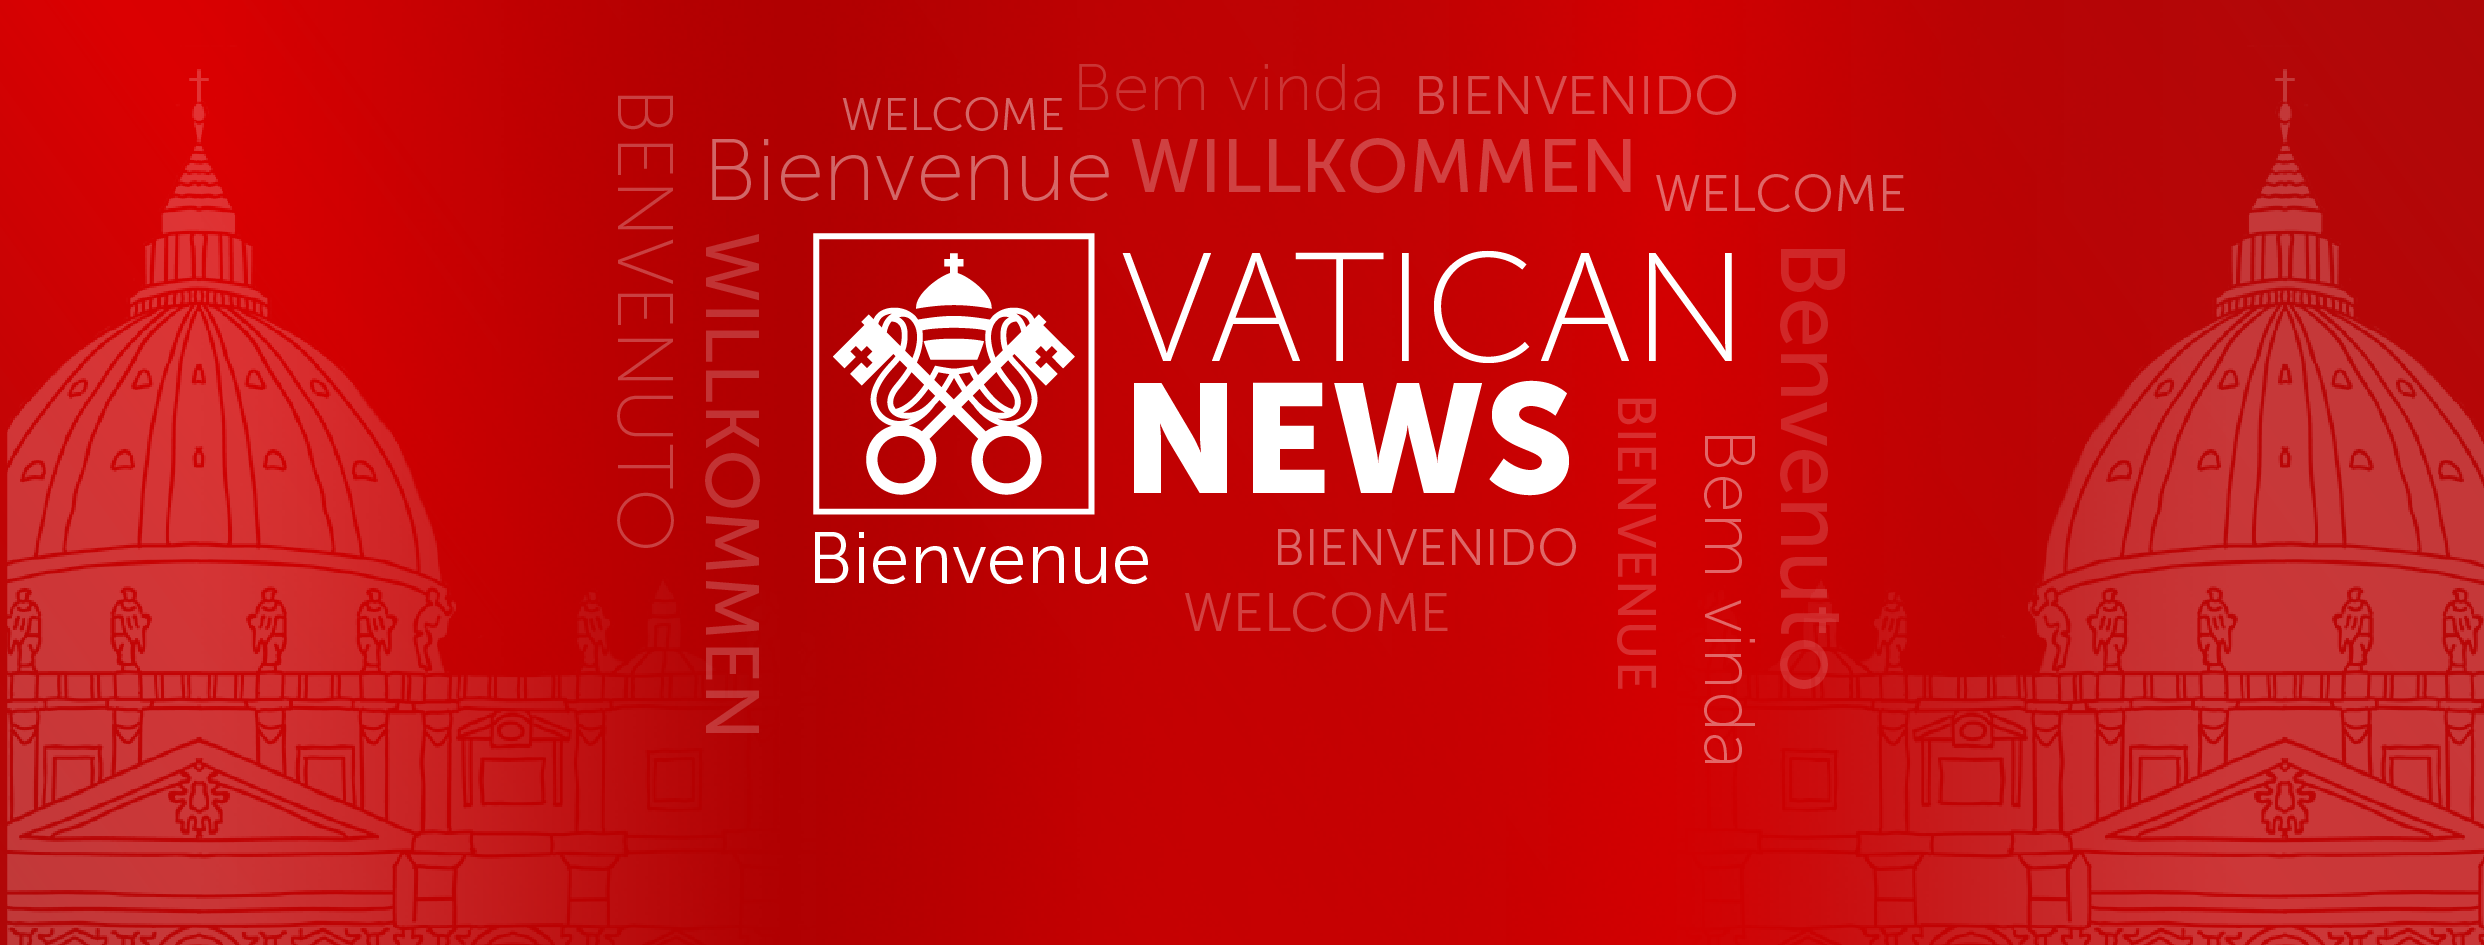 Radio Vatican diffusée en DAB en Italie